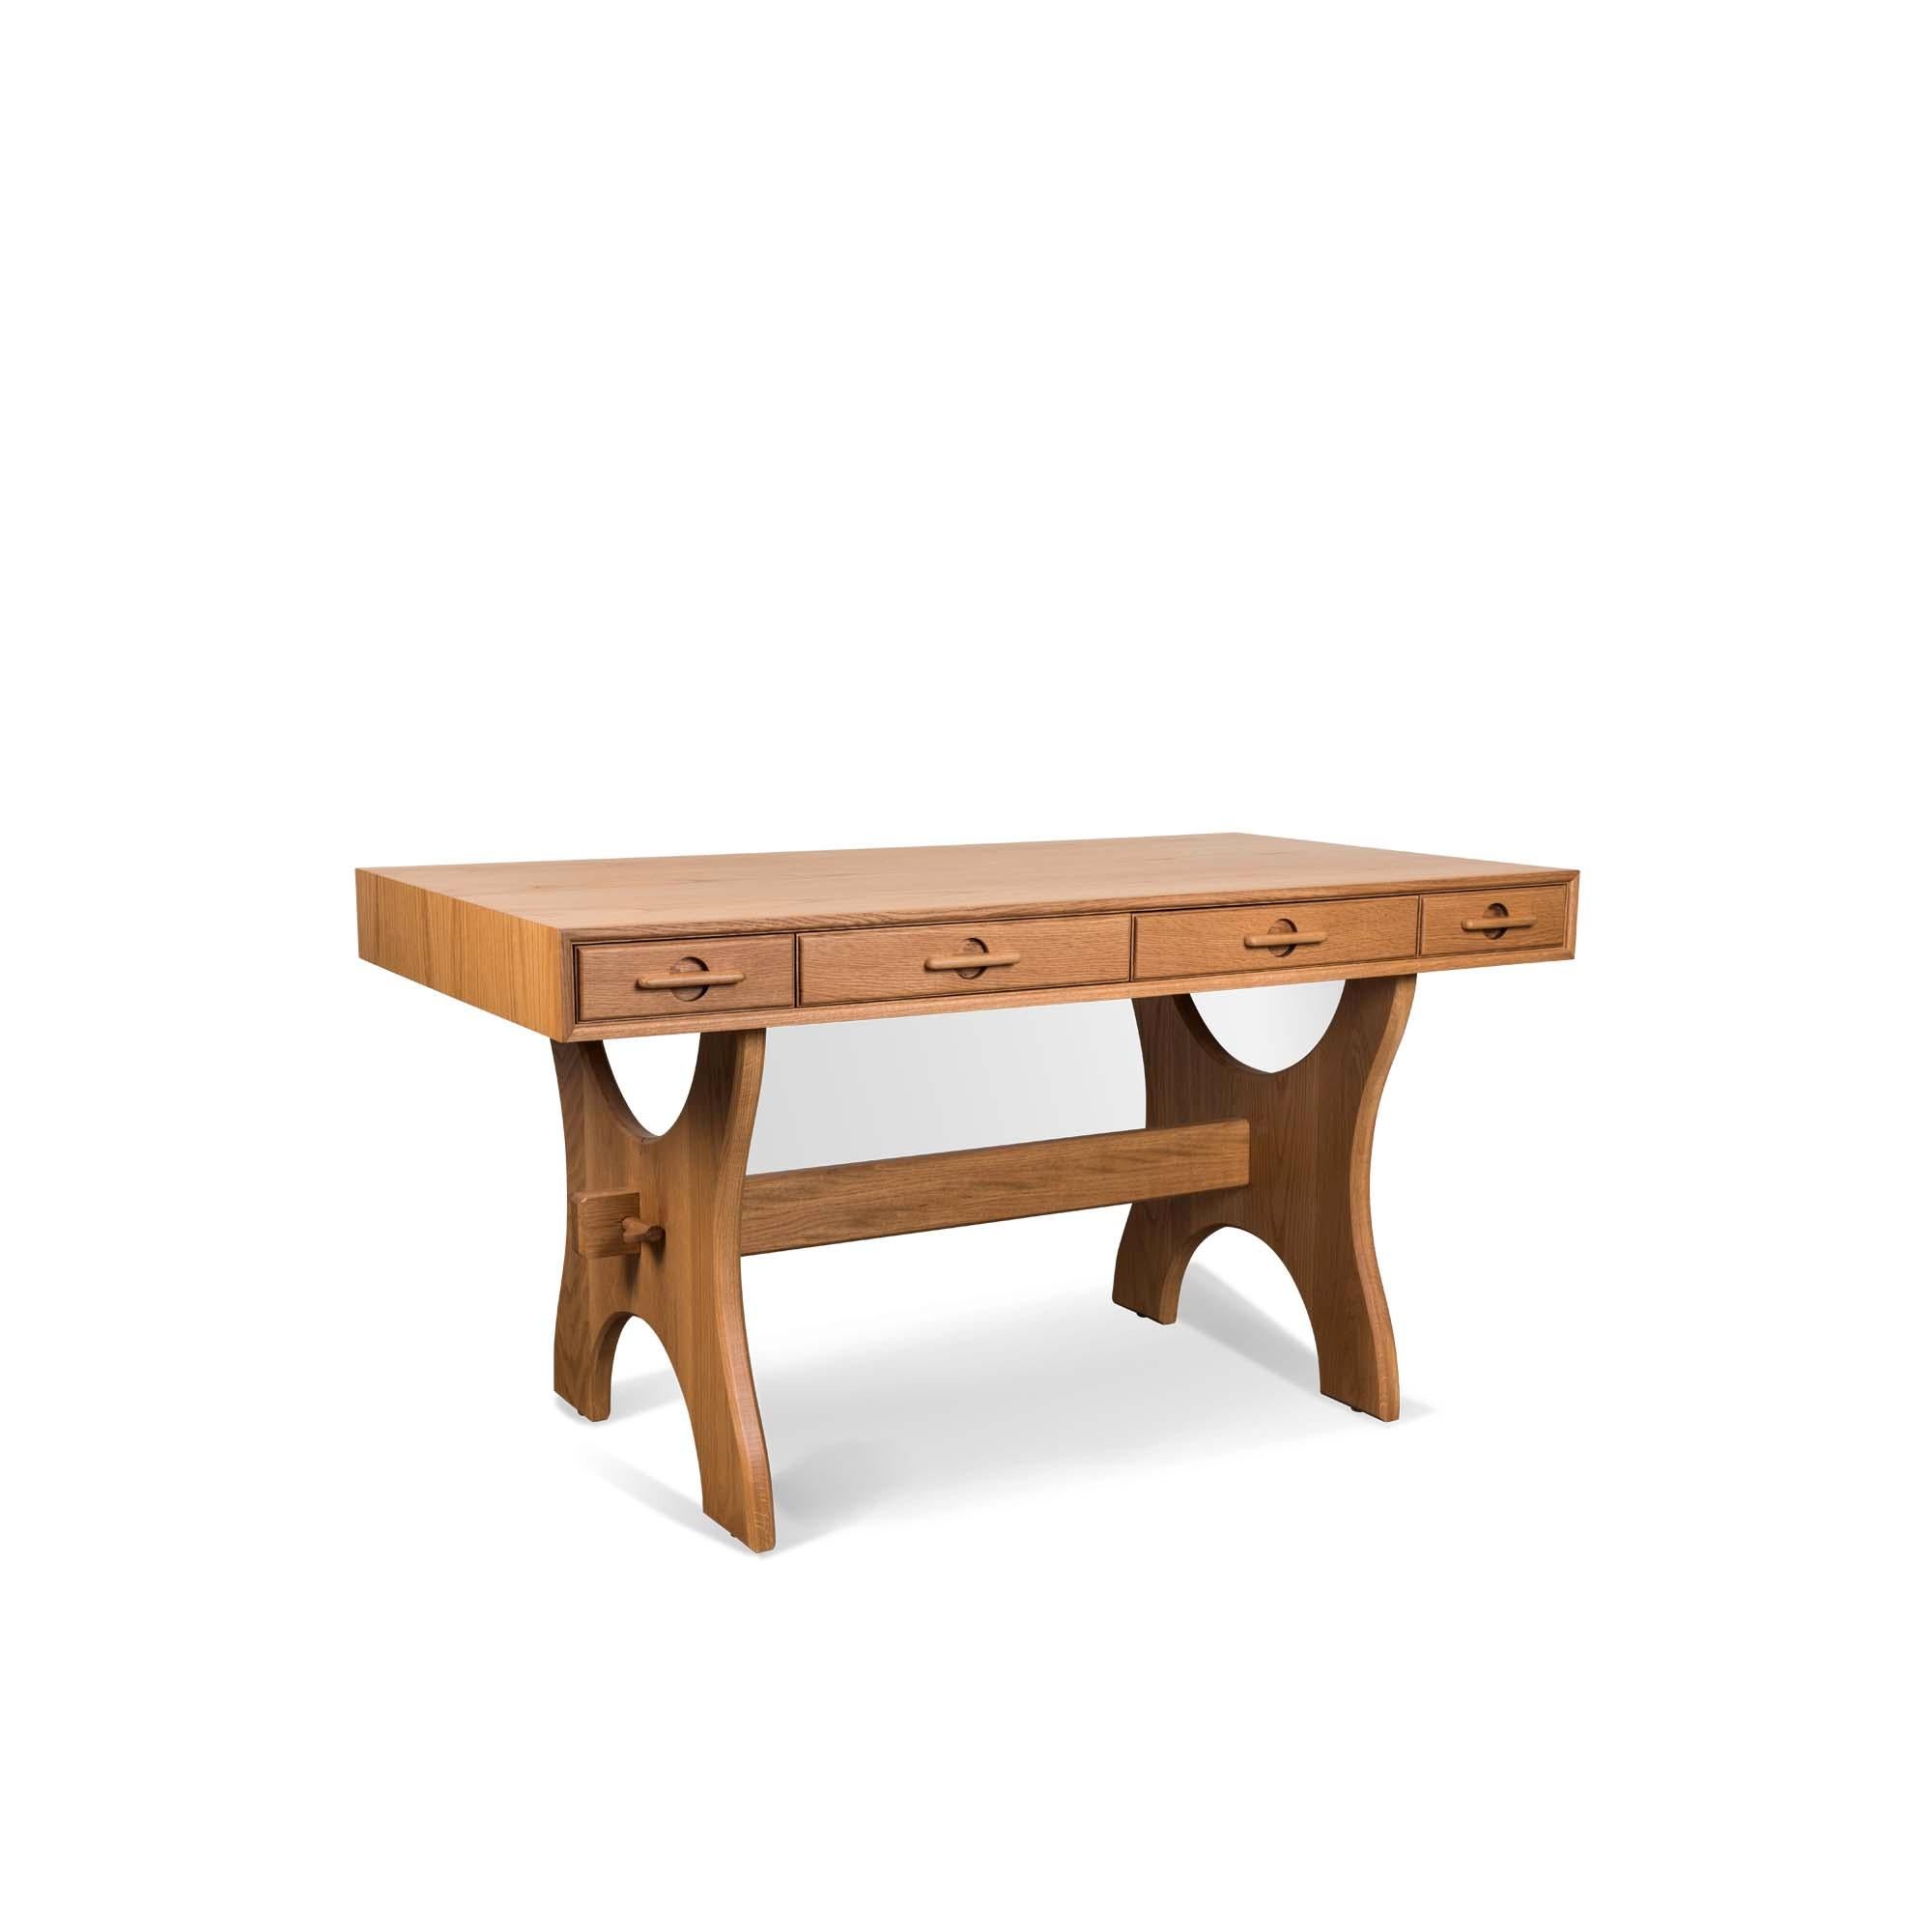 Der Ojai-Schreibtisch hat vier Schubladen und ist mit massiven Beinen aus amerikanischem Nussbaum oder Weißeiche ausgestattet. Die Schubladengriffe sind aus massivem, geschnitztem Holz gefertigt. 

Die Lawson-Fenning C-Kollektion wird in Los